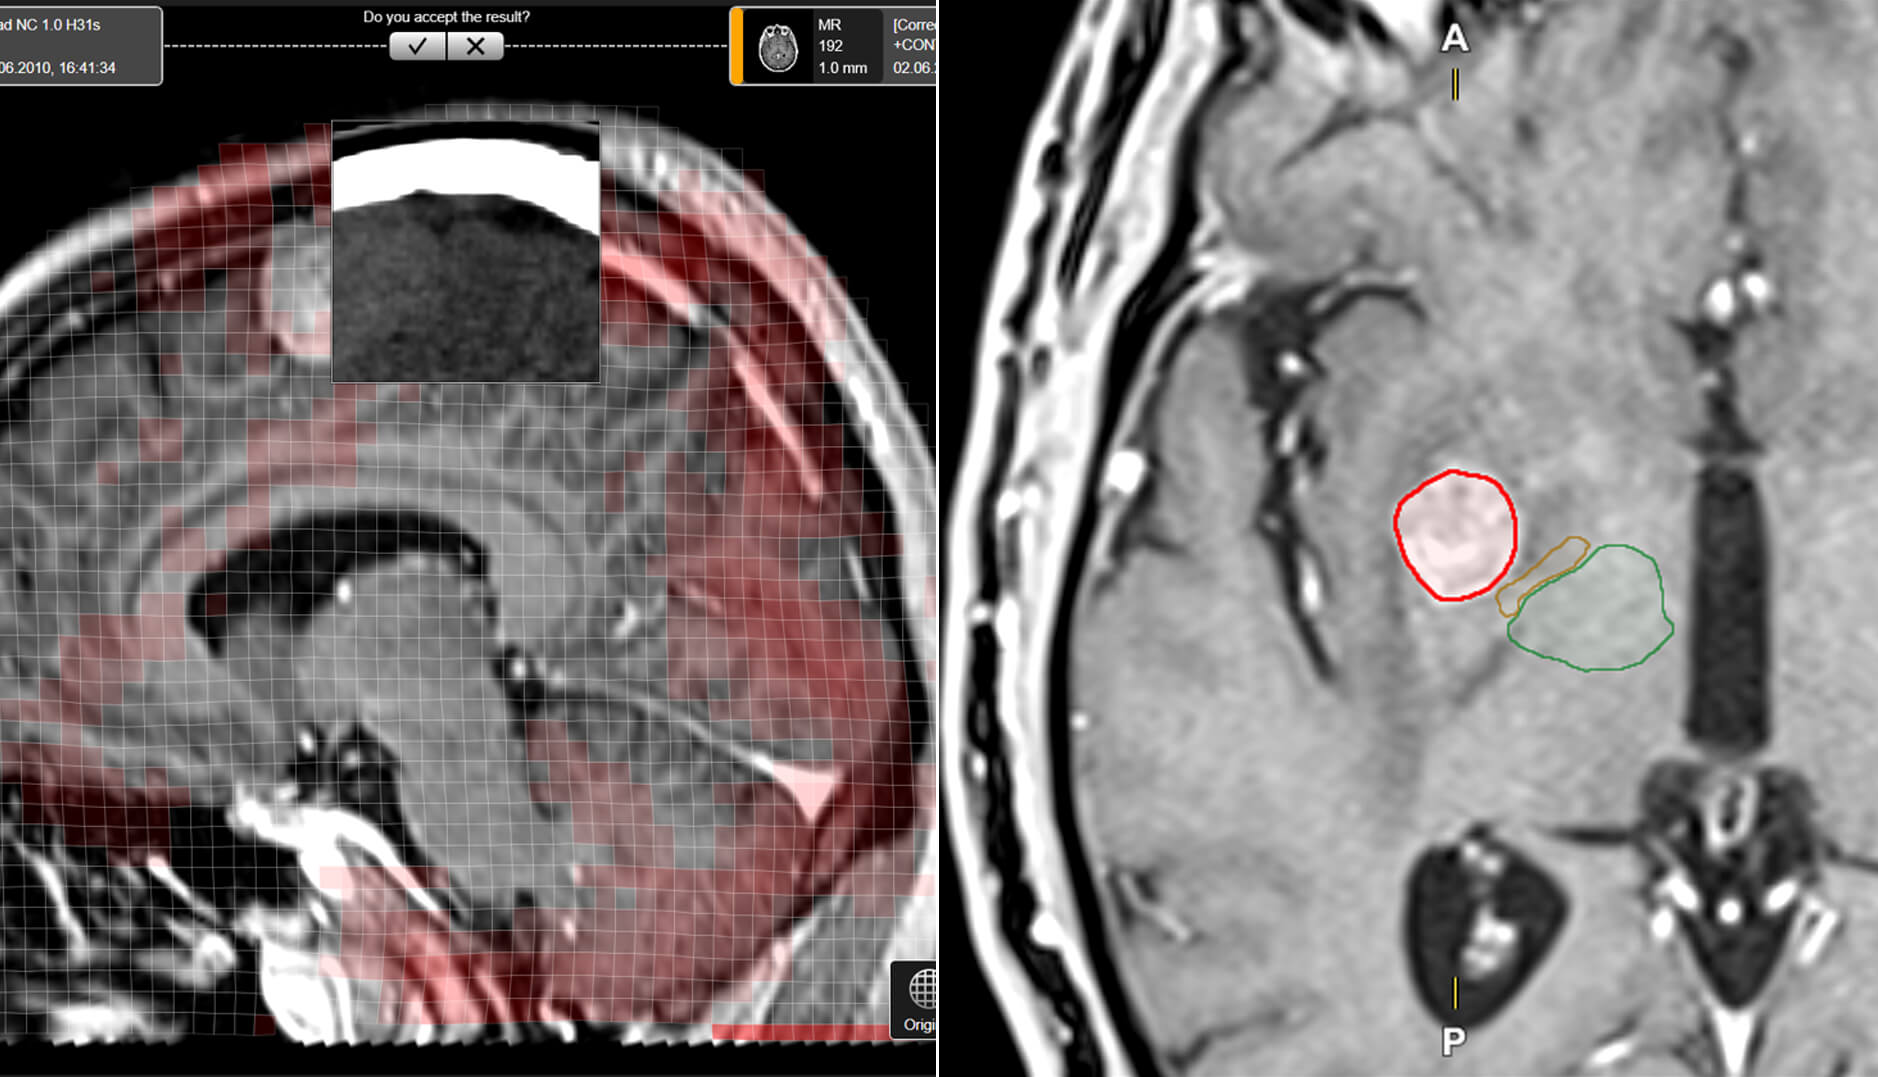 Captura de pantalla que muestra las vistas y las imágenes disponibles para el usuario en las aplicaciones de software Elements destinadas a la planificación de tratamientos de radiocirugía y radioterapia.